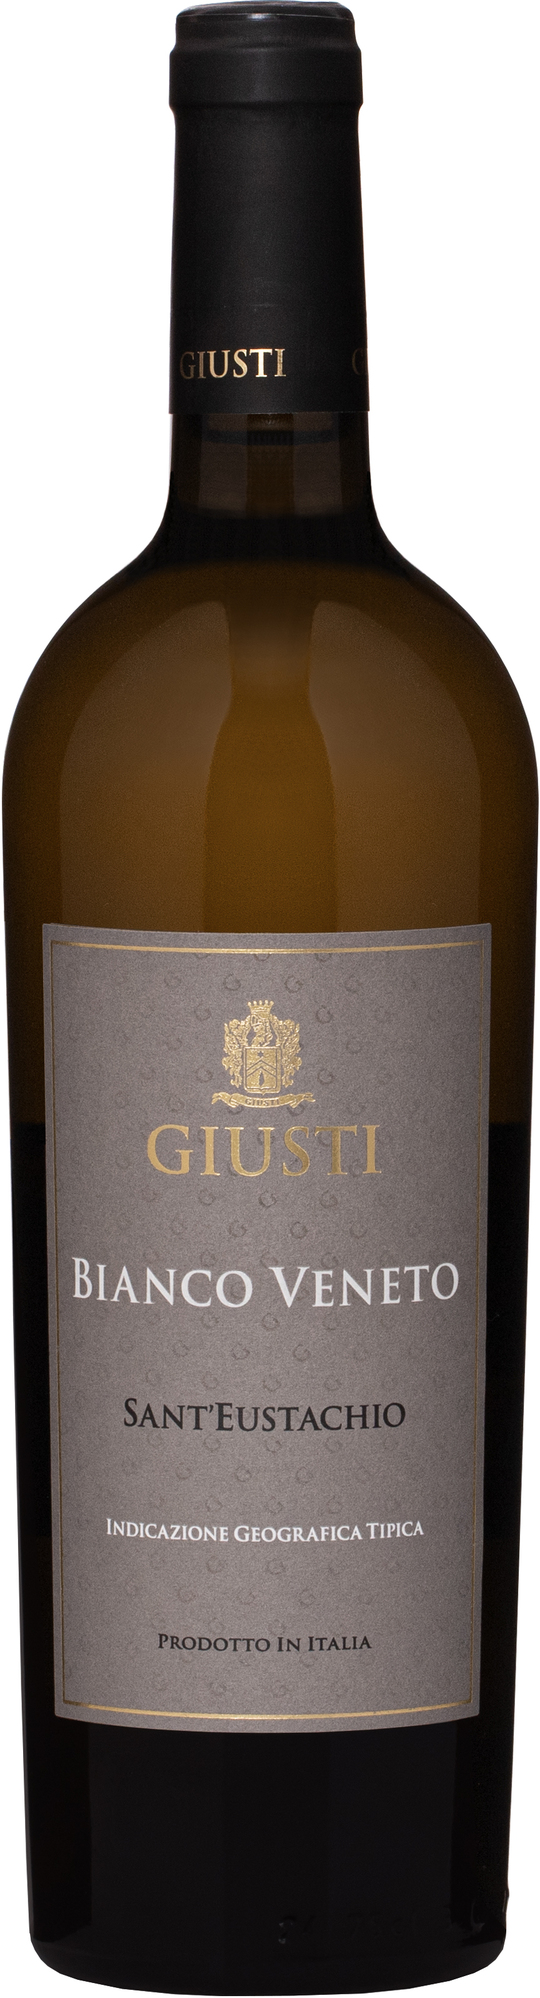 Giusti Bianco Veneto IGT Sant'Eustachio 12,5% 0,75l